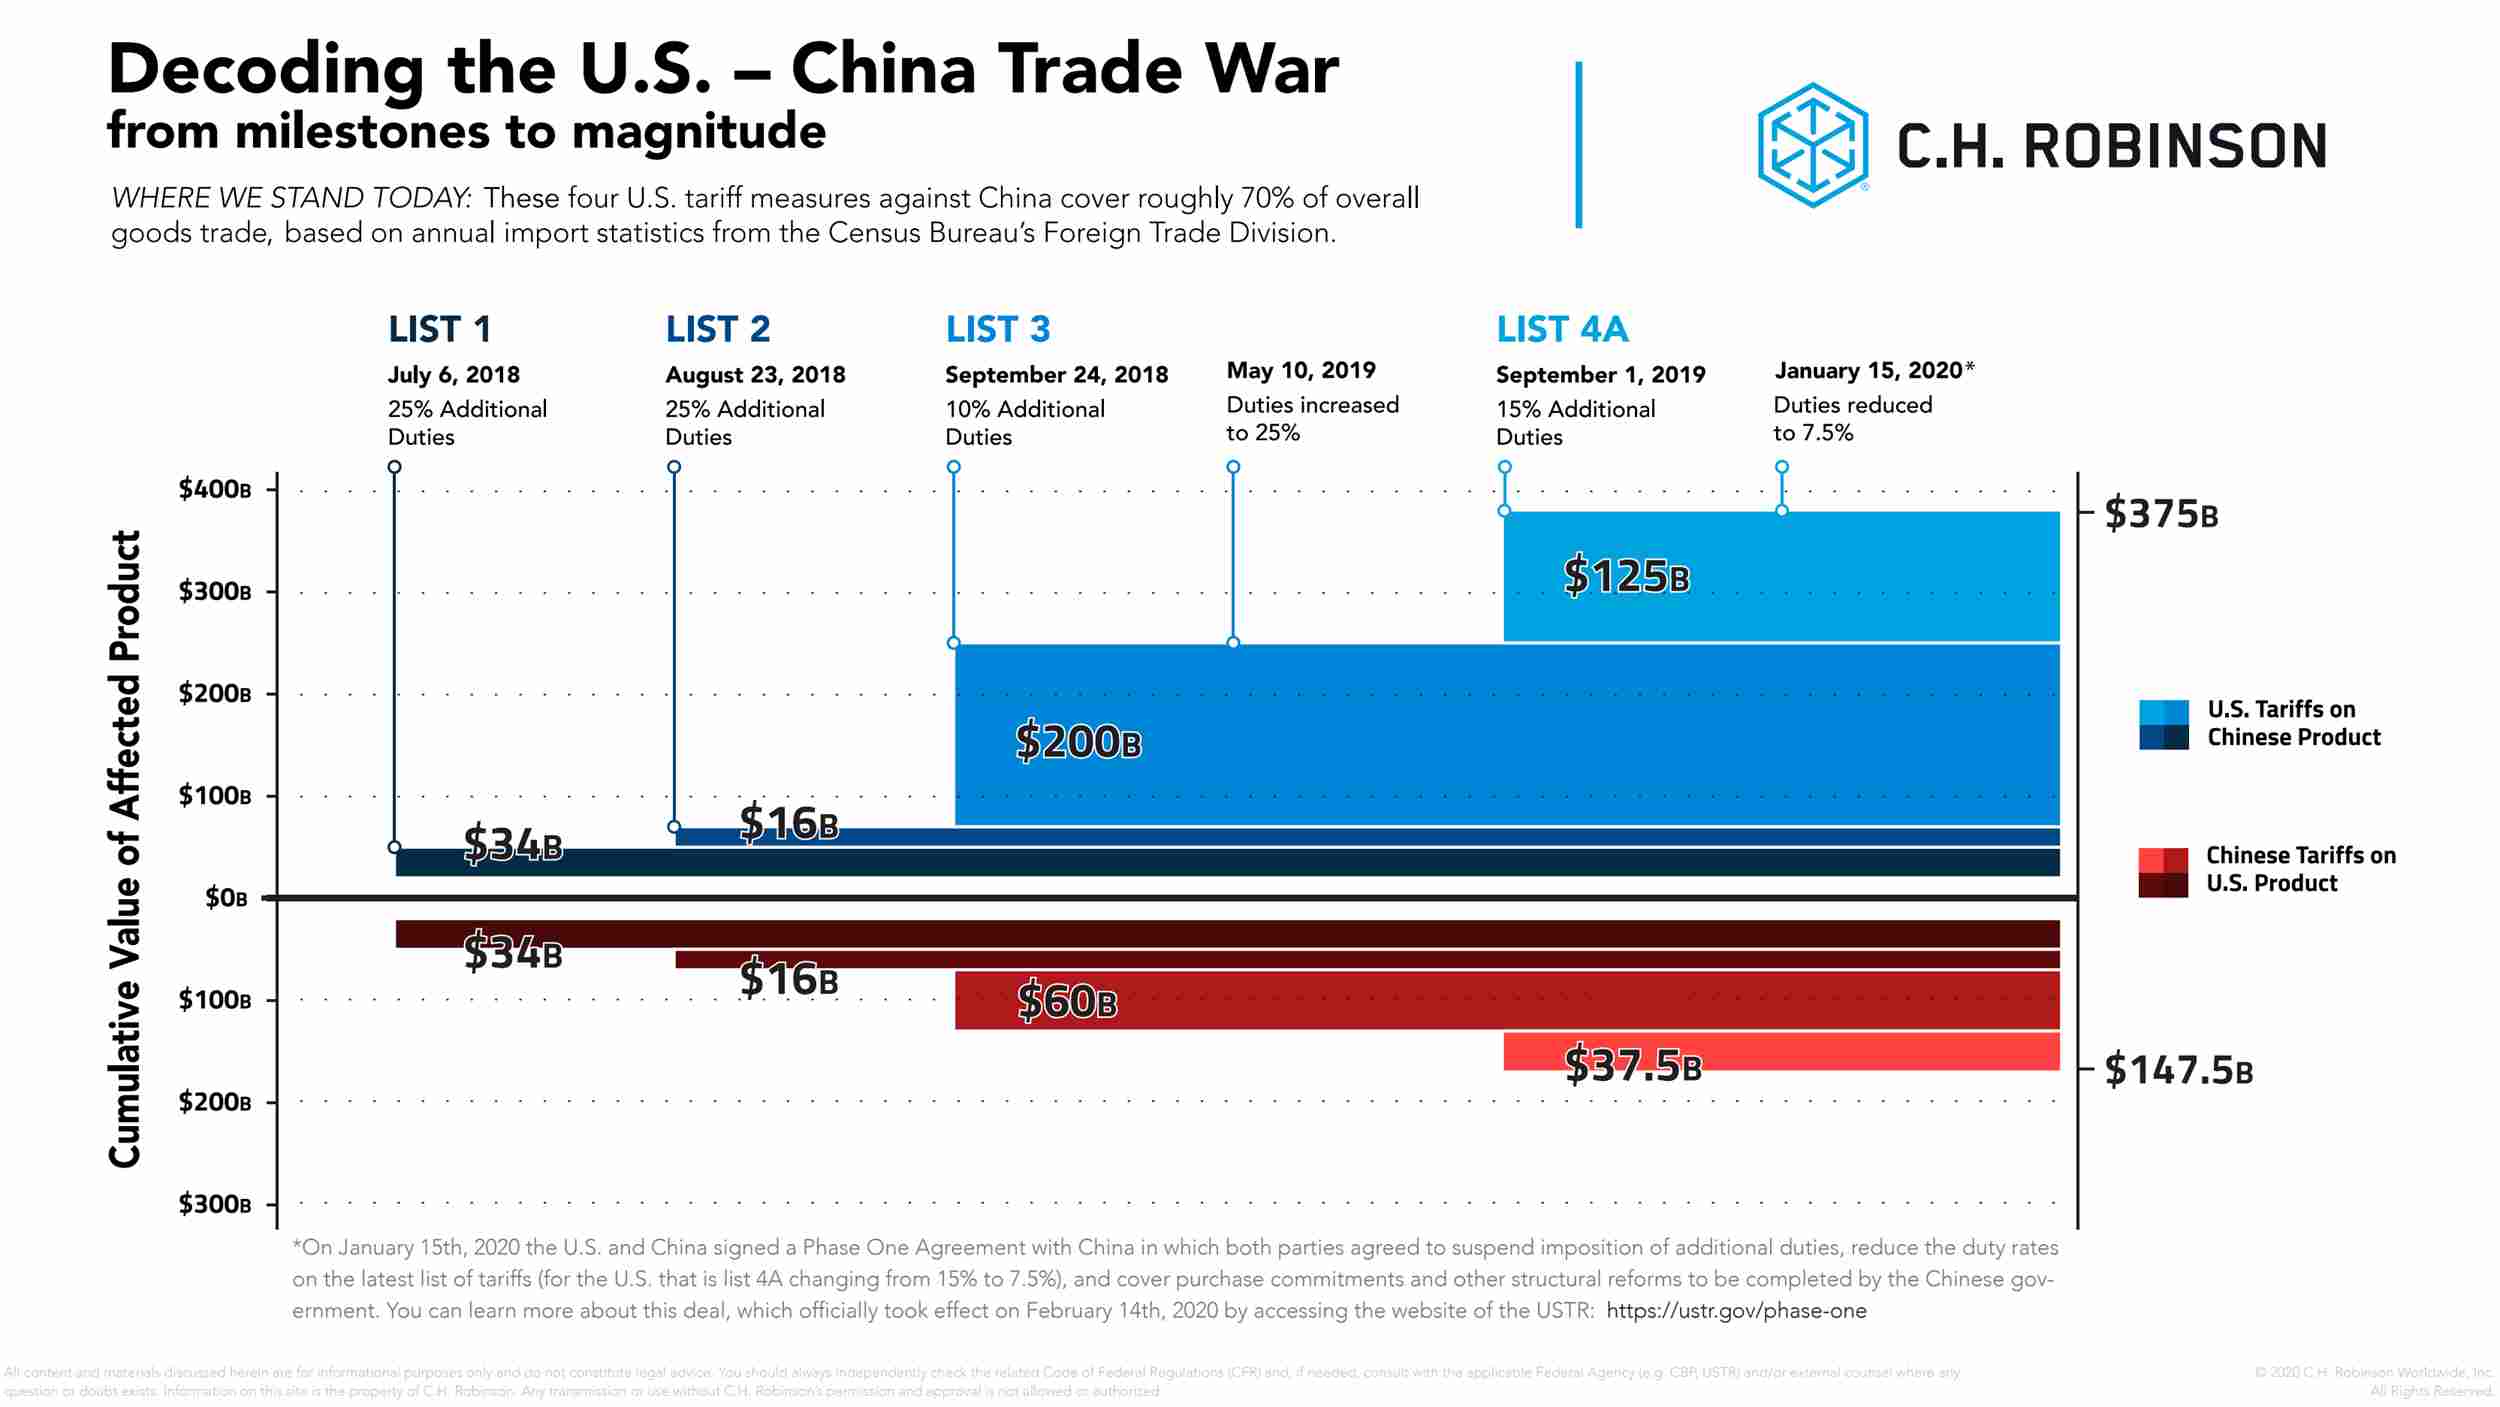 Gráfico que muestra la decodificación de la guerra comercial entre Estados Unidos y China